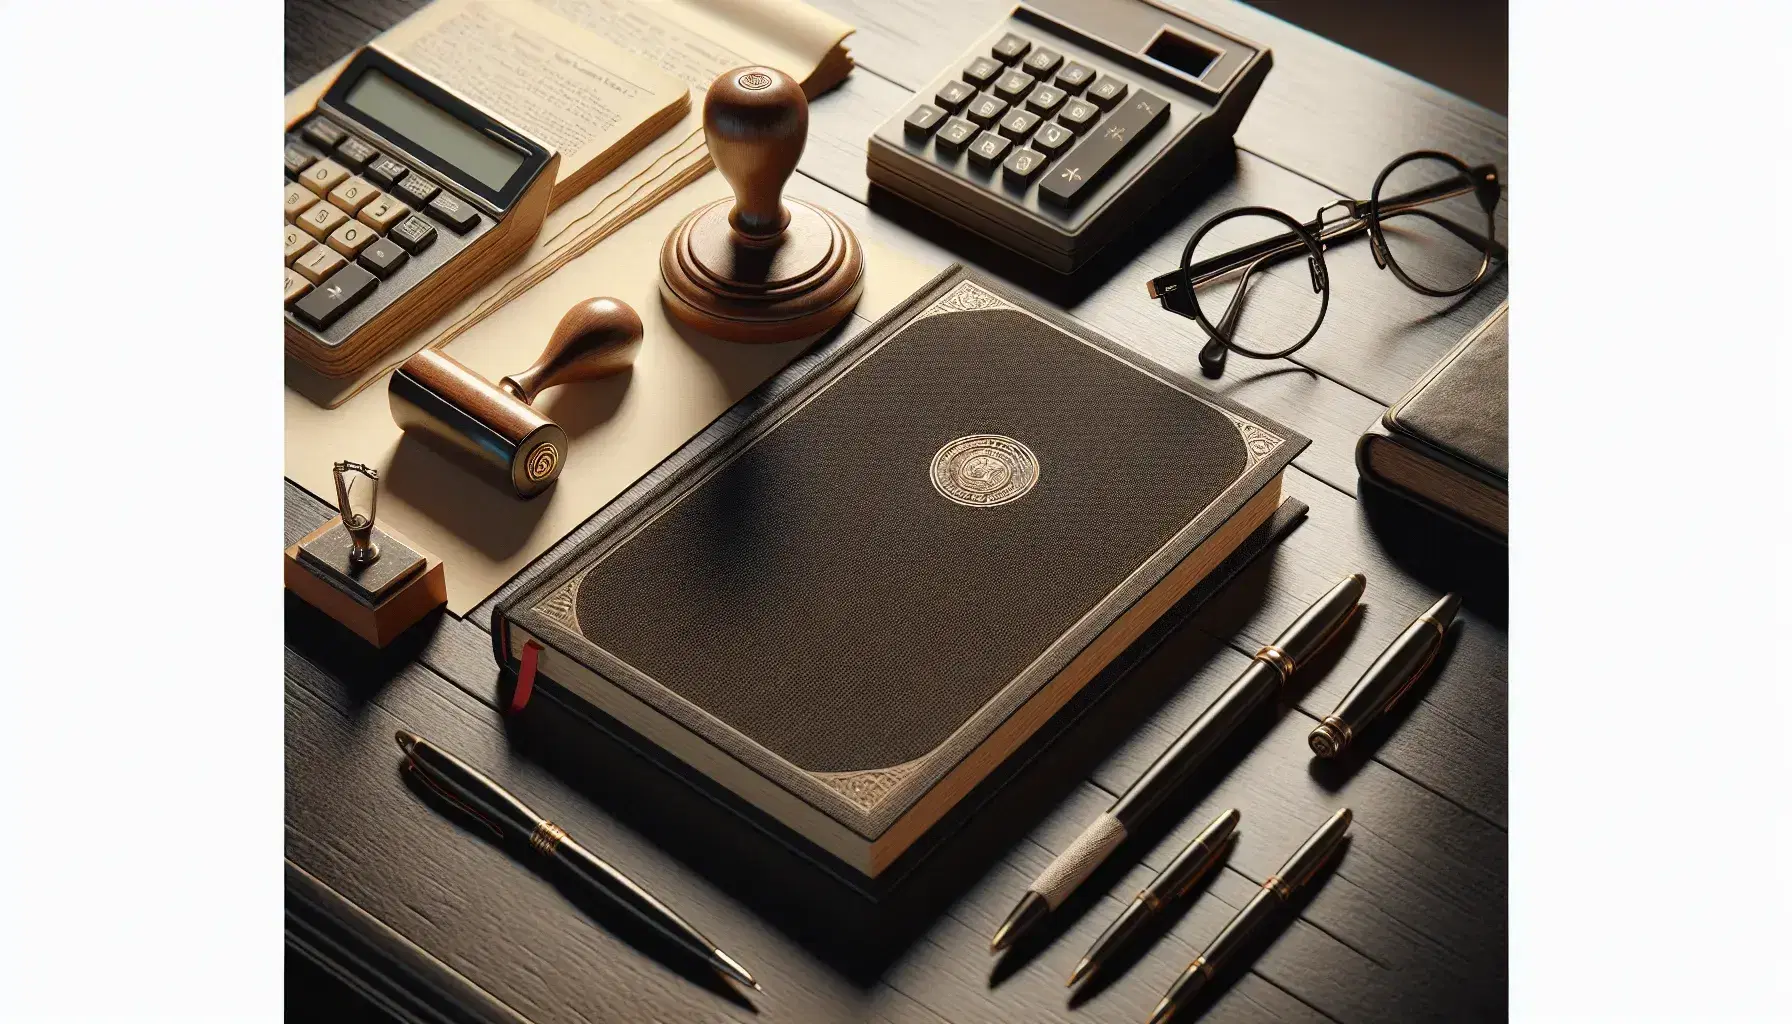 Escritorio de madera oscuro con libro abierto, calculadora, gafas, sello con tinta, bolígrafos metálicos y teléfono antiguo, en fondo crema.